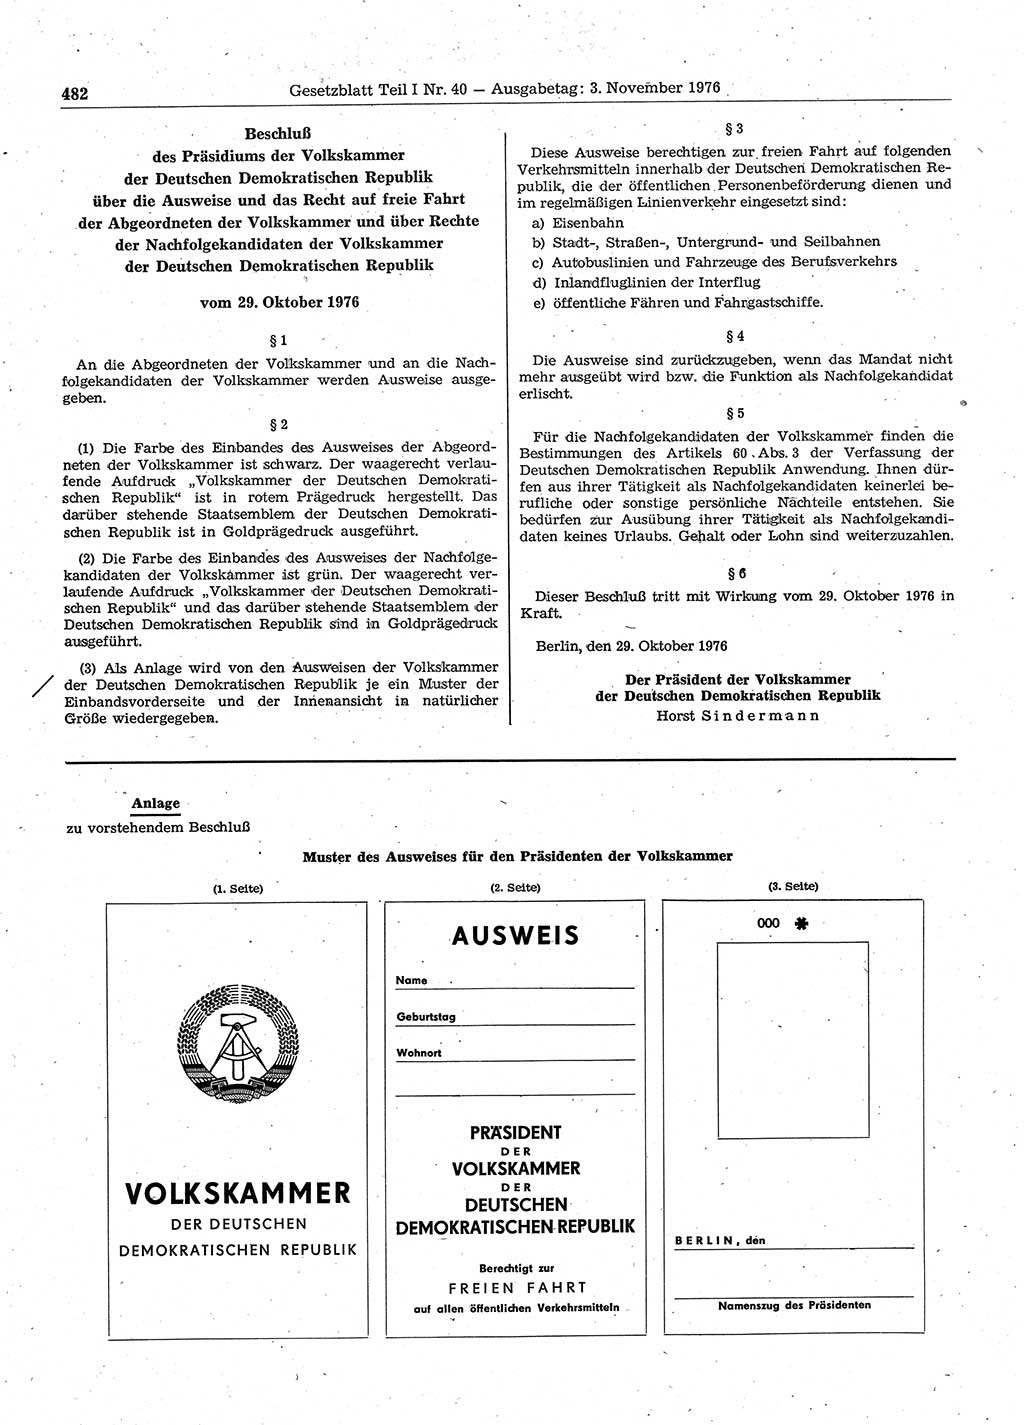 Gesetzblatt (GBl.) der Deutschen Demokratischen Republik (DDR) Teil Ⅰ 1976, Seite 482 (GBl. DDR Ⅰ 1976, S. 482)